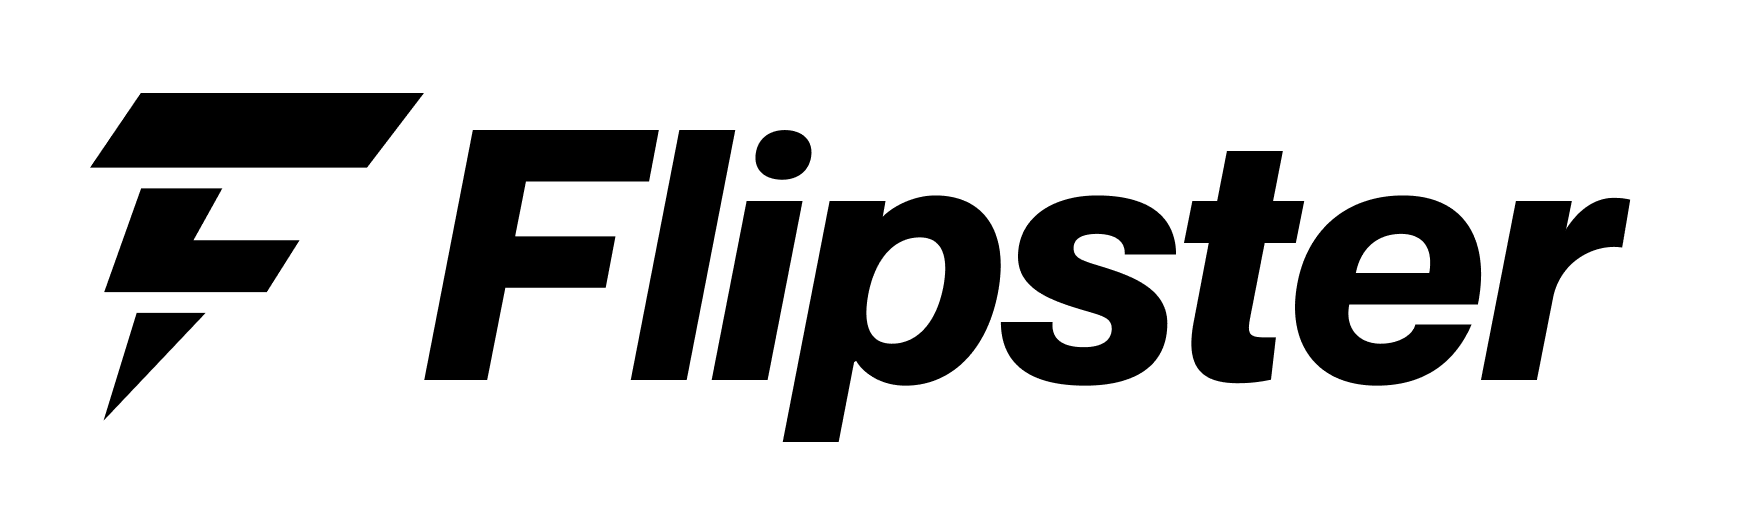 flipster-logo